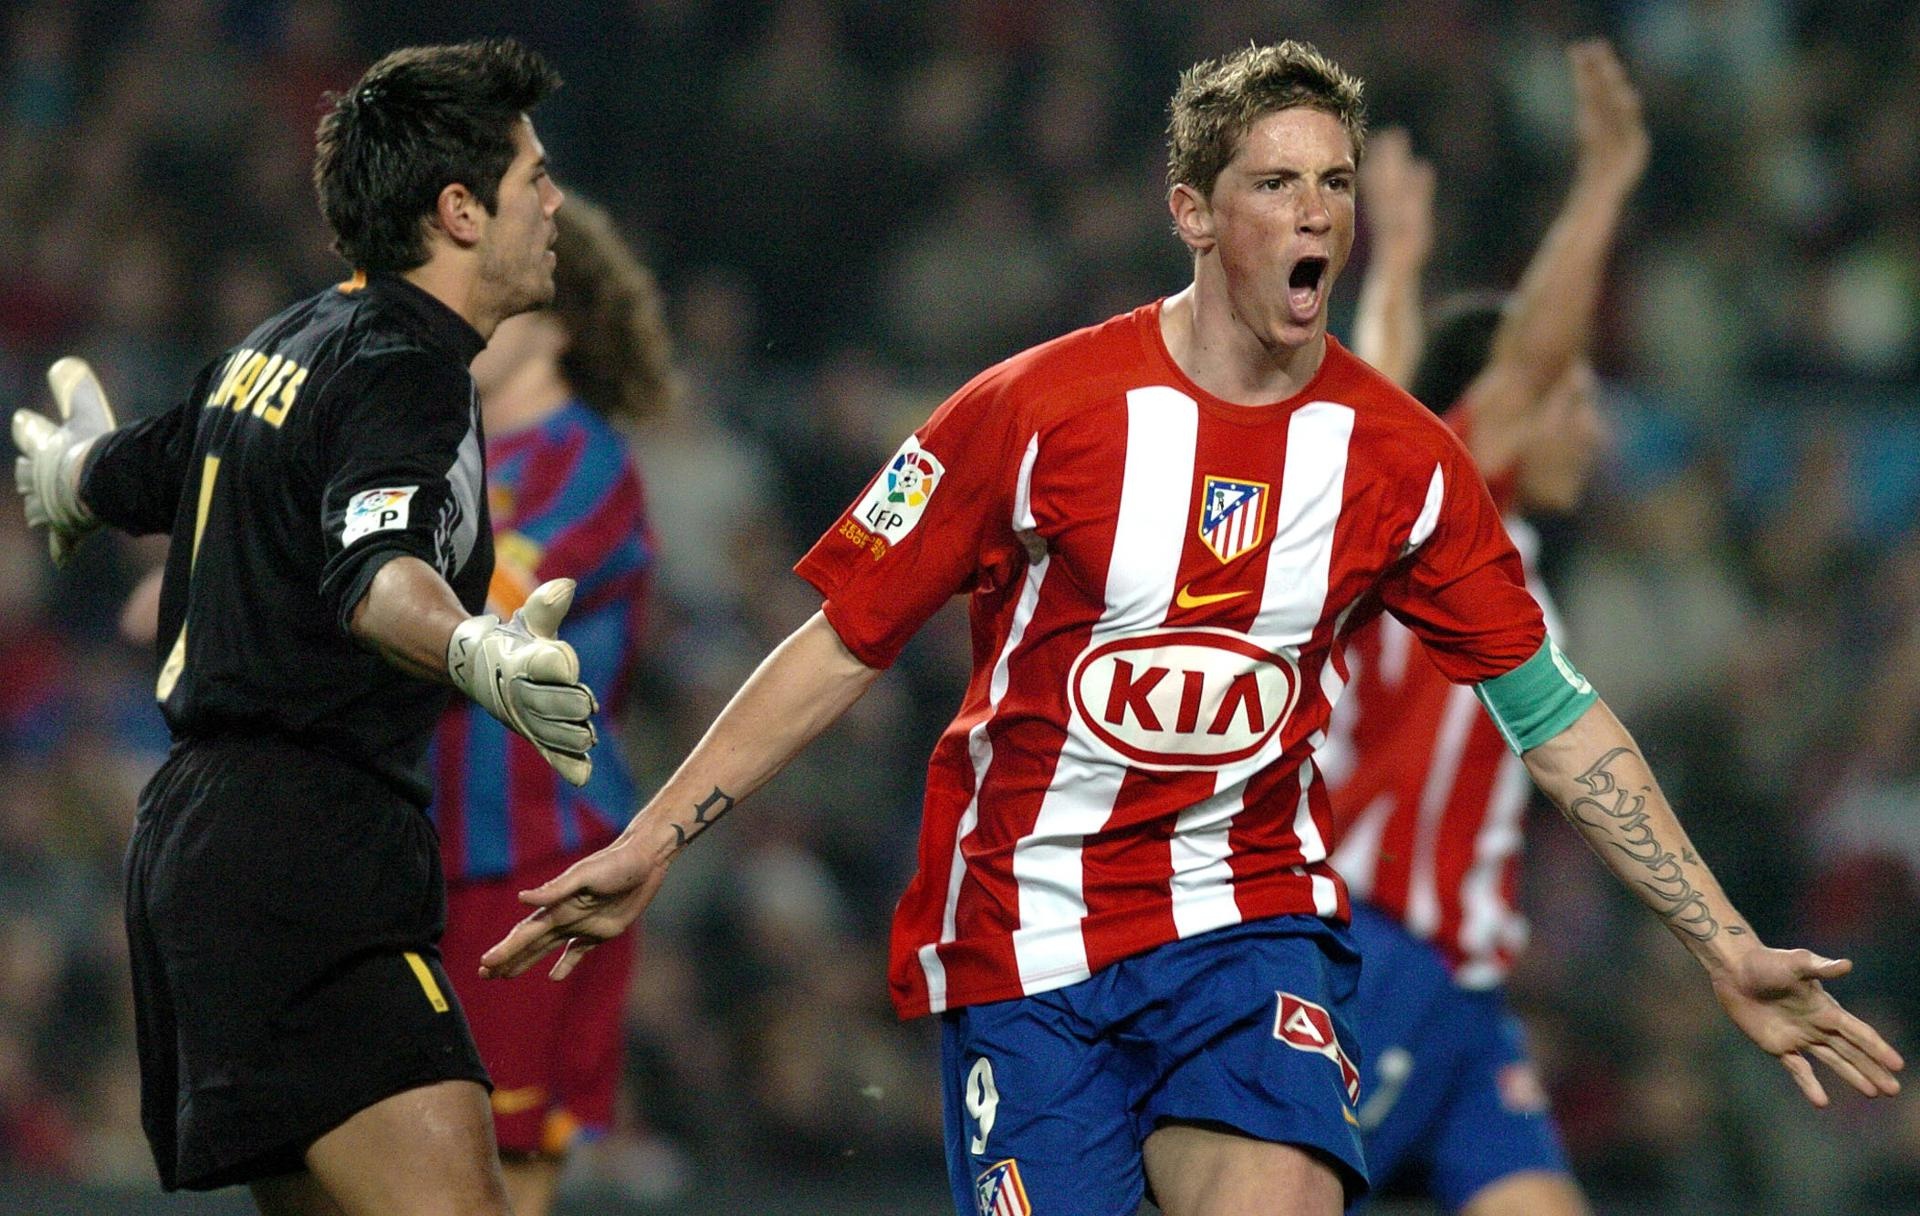 Fernando Torres to coach Atletico's reserve team